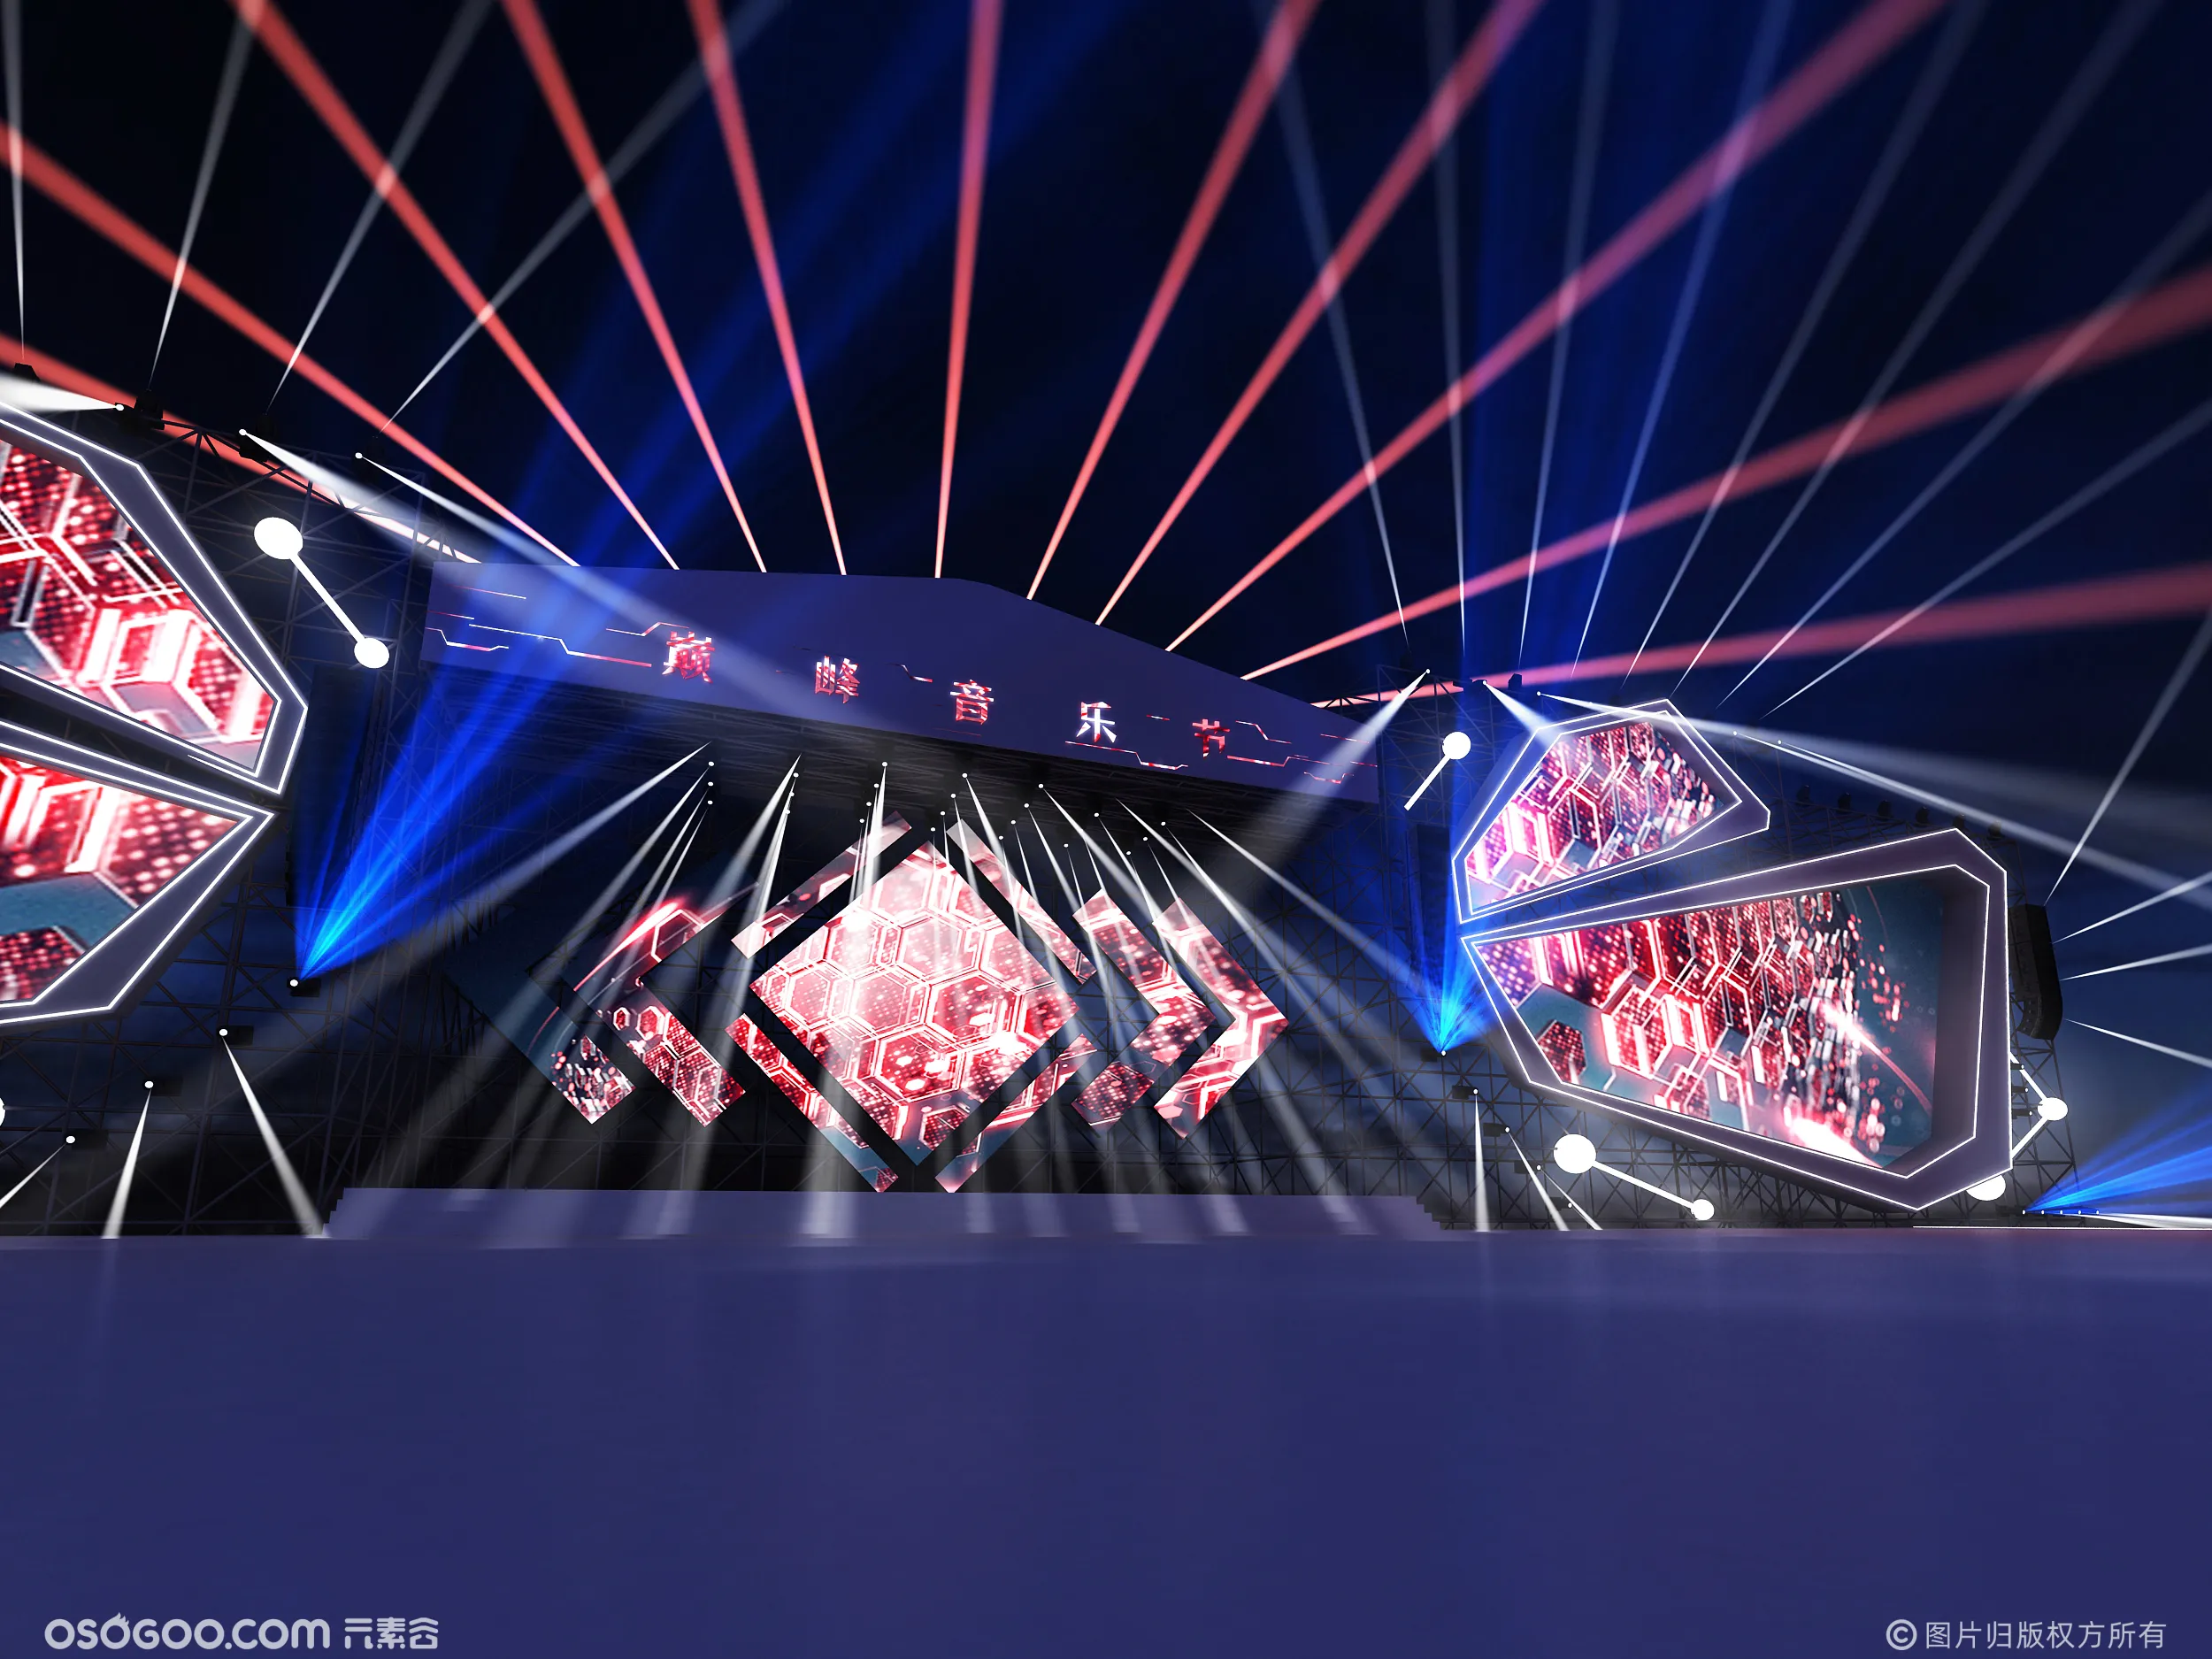 3D设计效果图▪巅峰音乐节舞美舞台设计